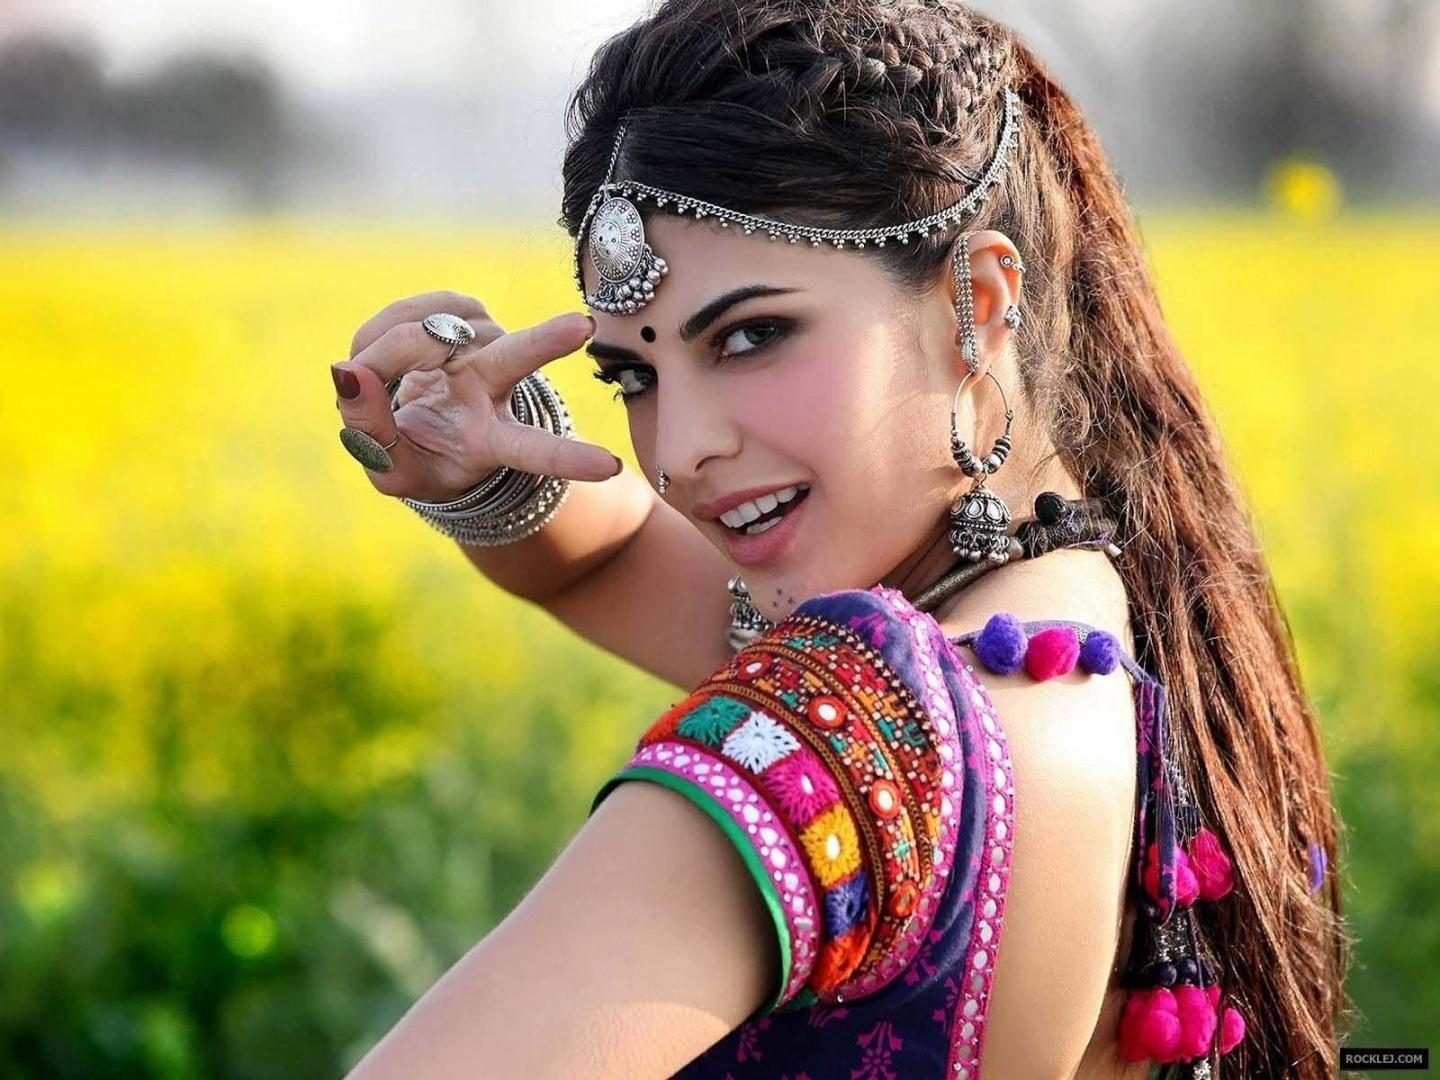 beautiful punjabi girl wallpaper,clothing,street fashion,eyewear,crop  top,cool (#112616) - WallpaperUse